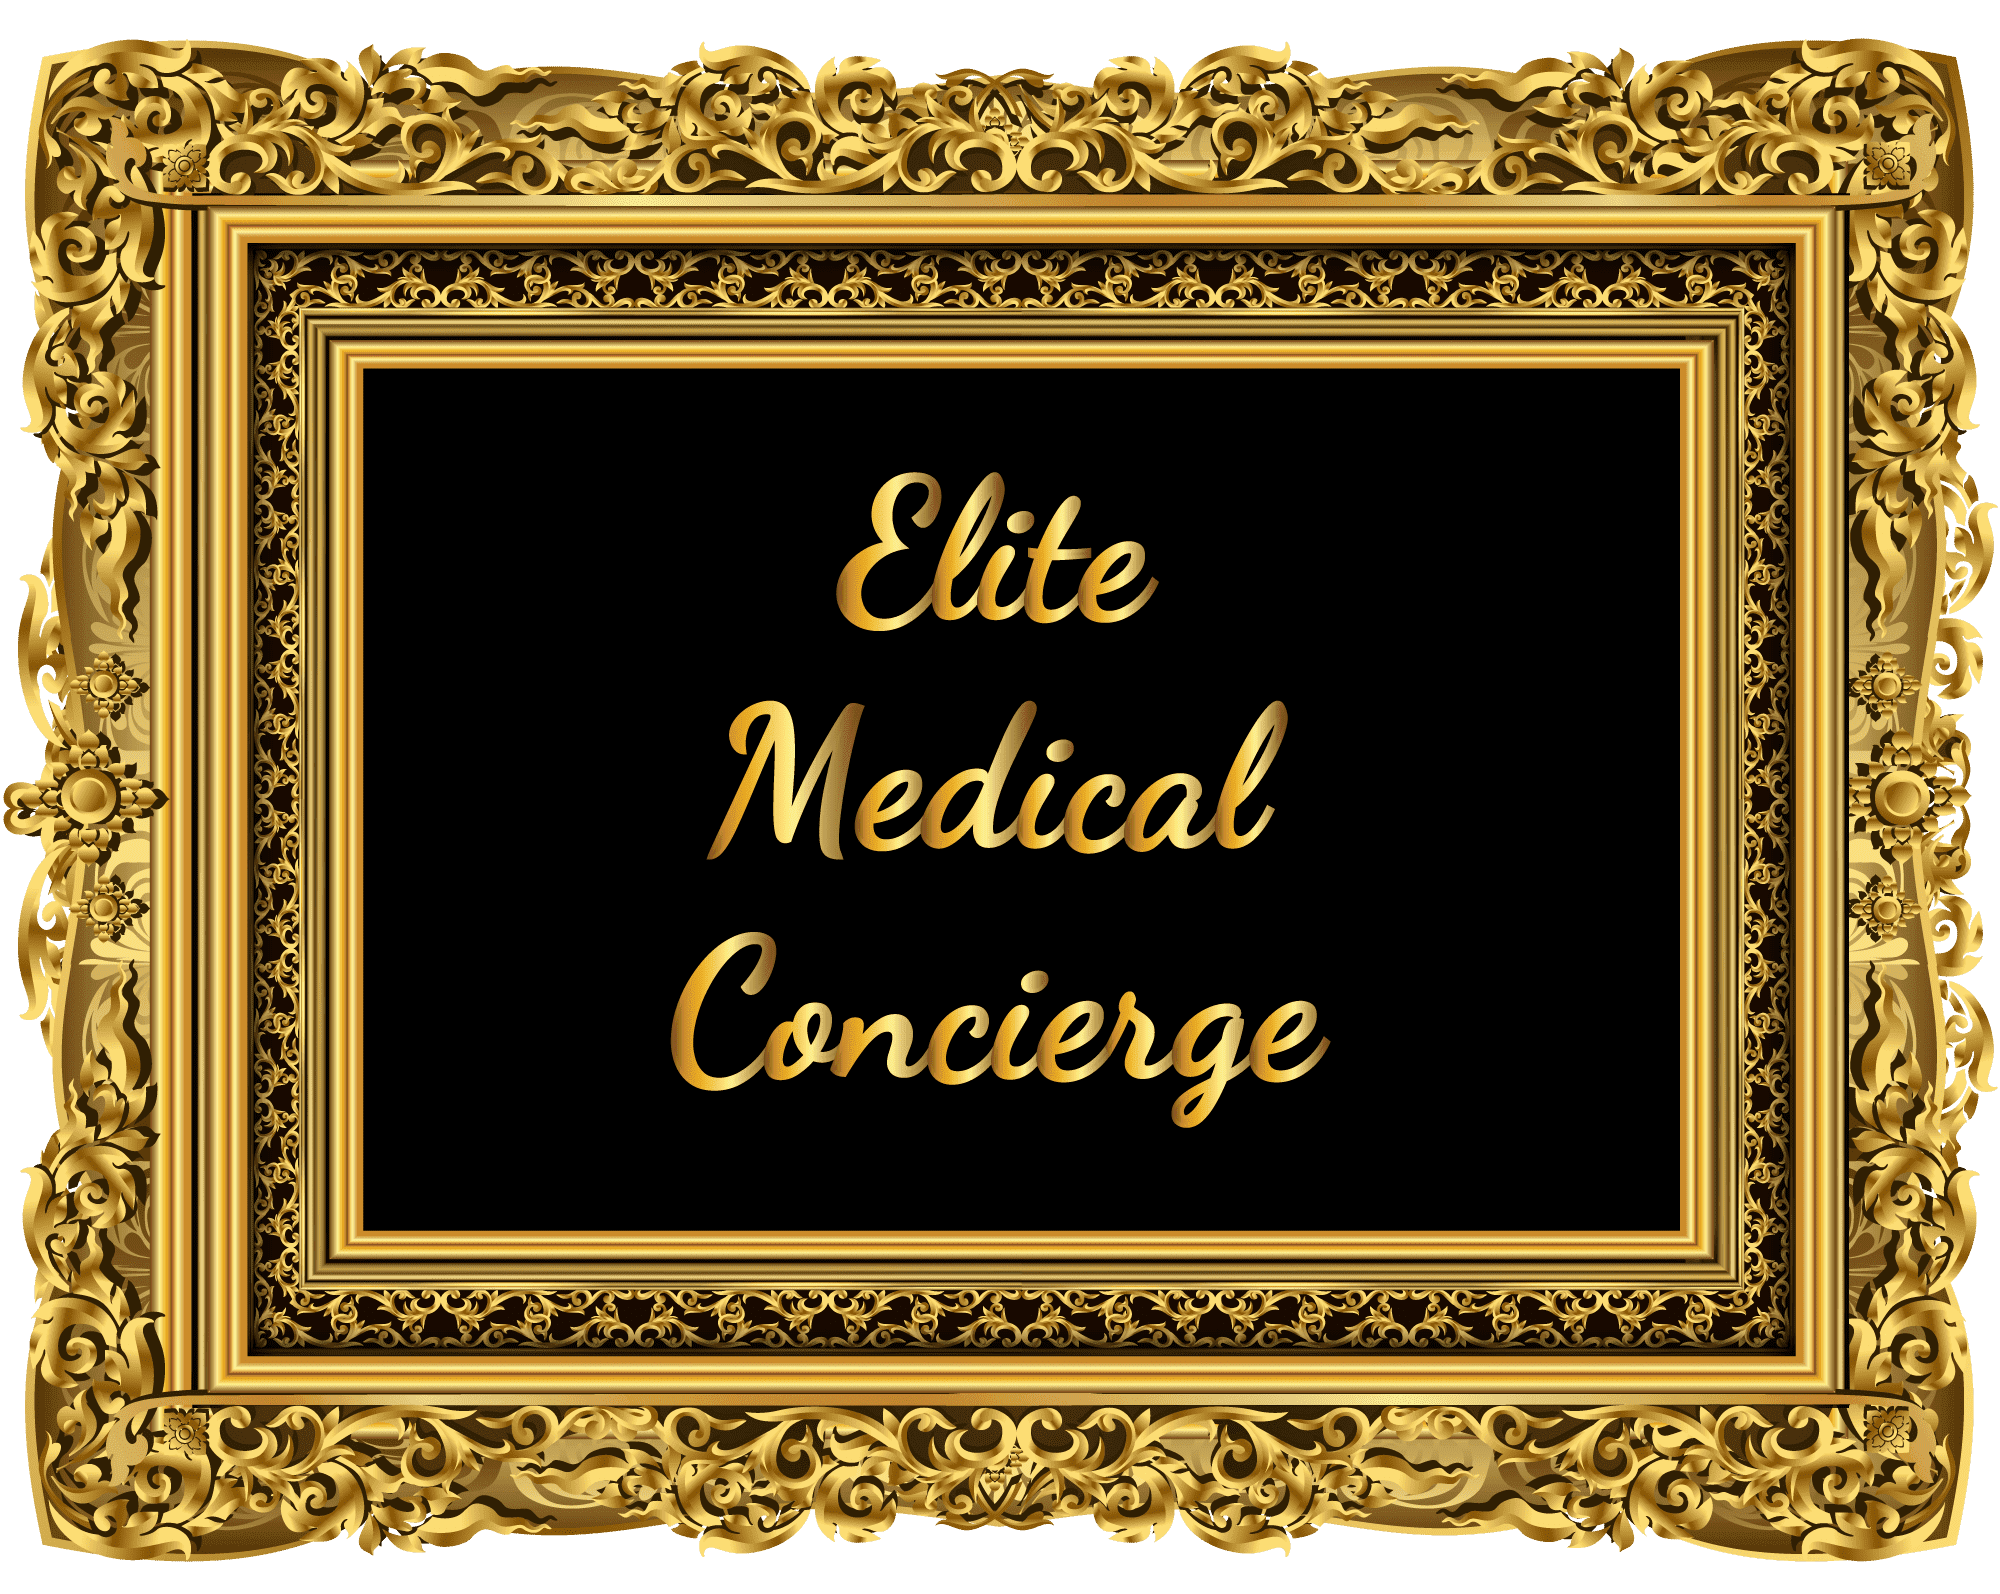 Elite Medical Concierge